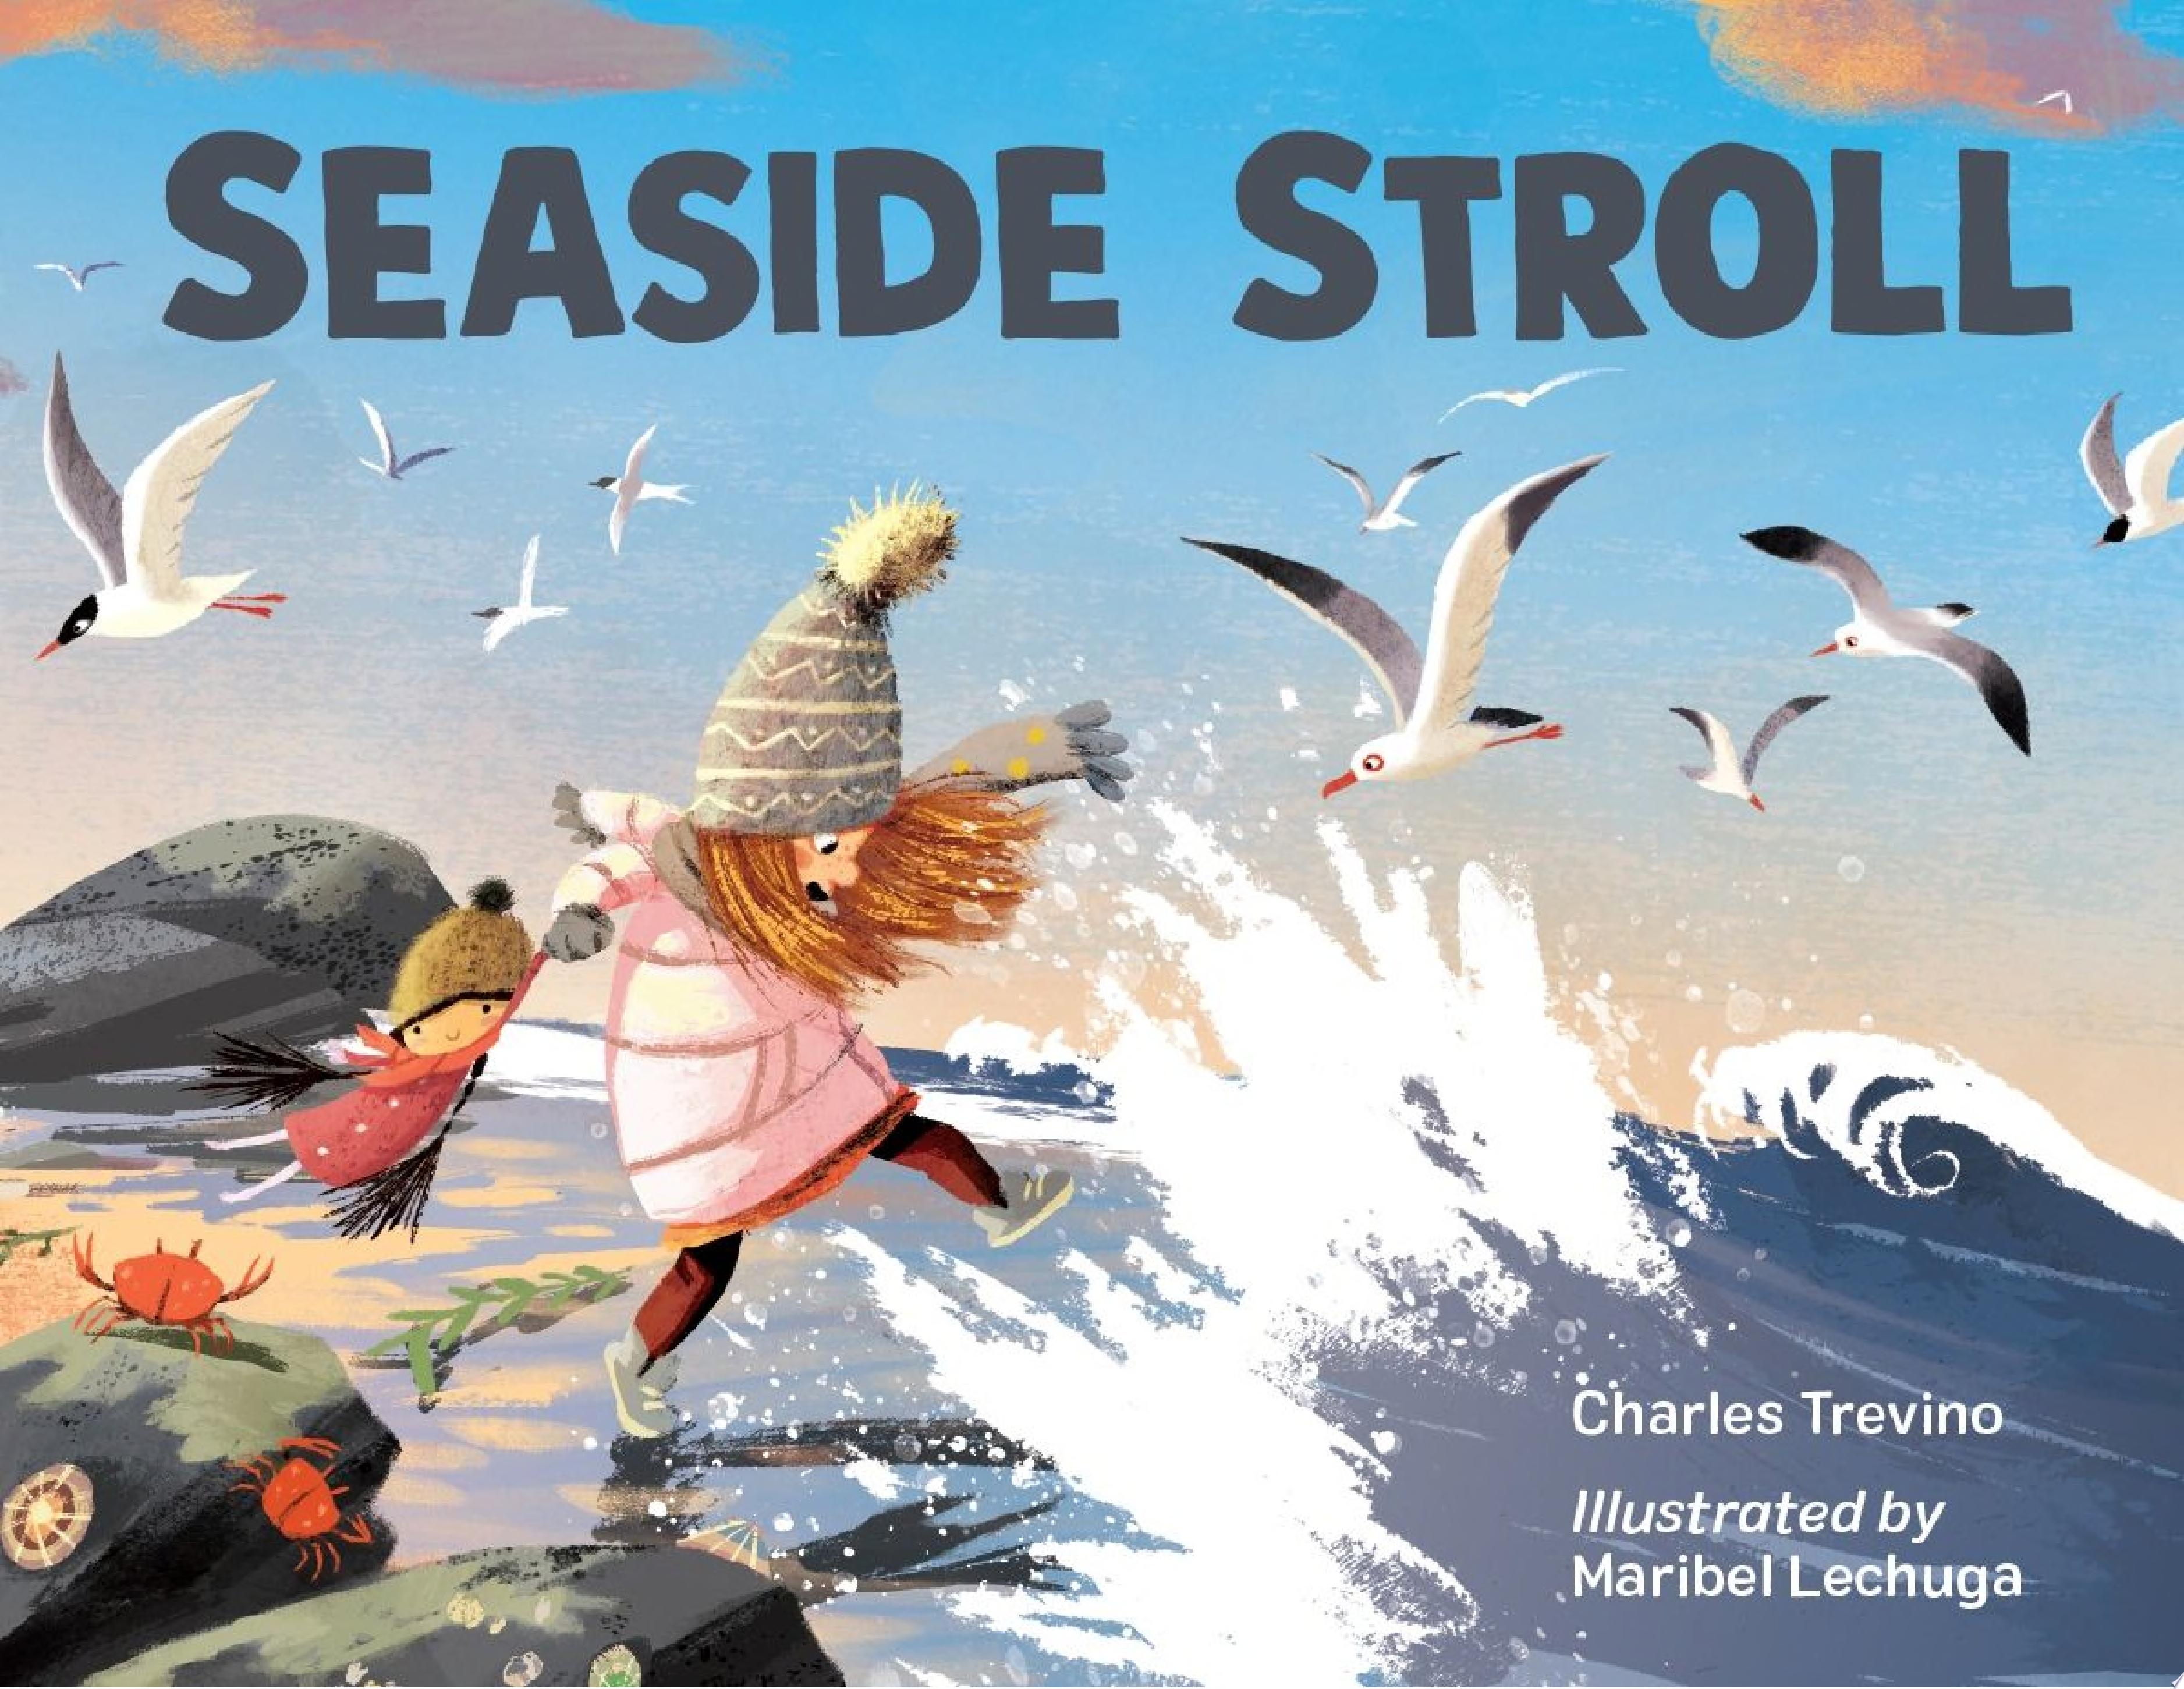 Image for "Seaside Stroll"